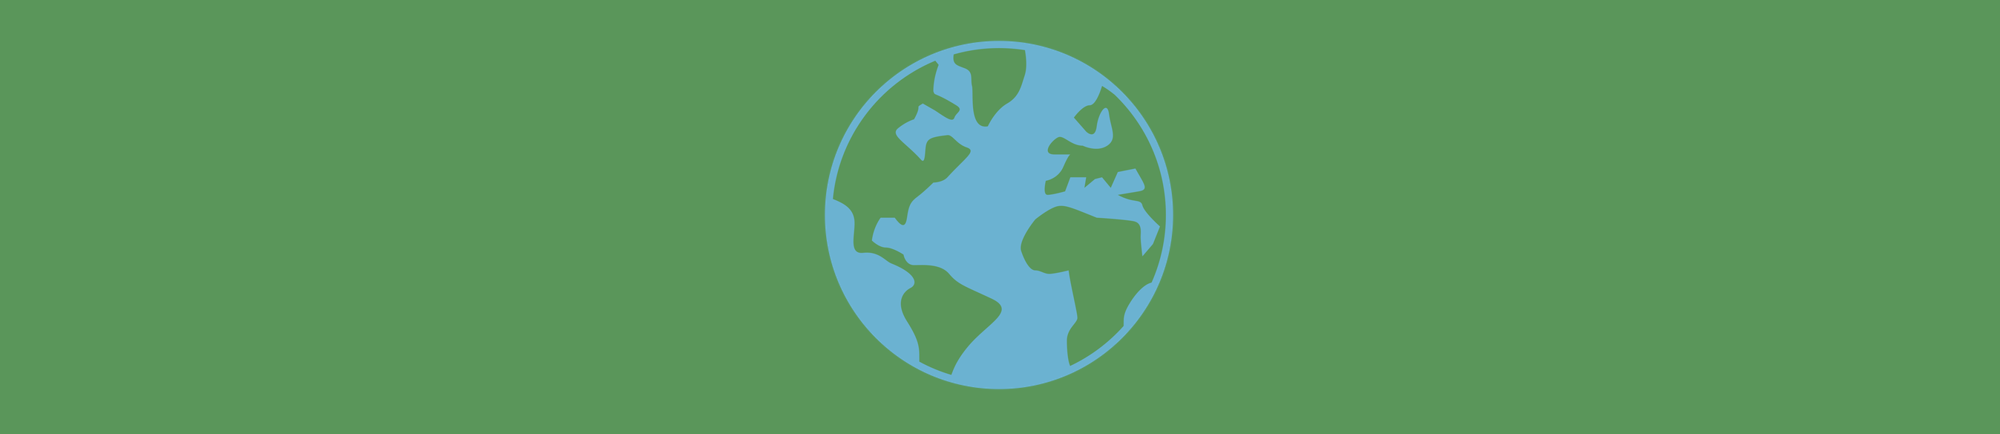 Documentário Brave Blue World: Conheça 4 negócios que estão combatendo a crise hídrica mundial